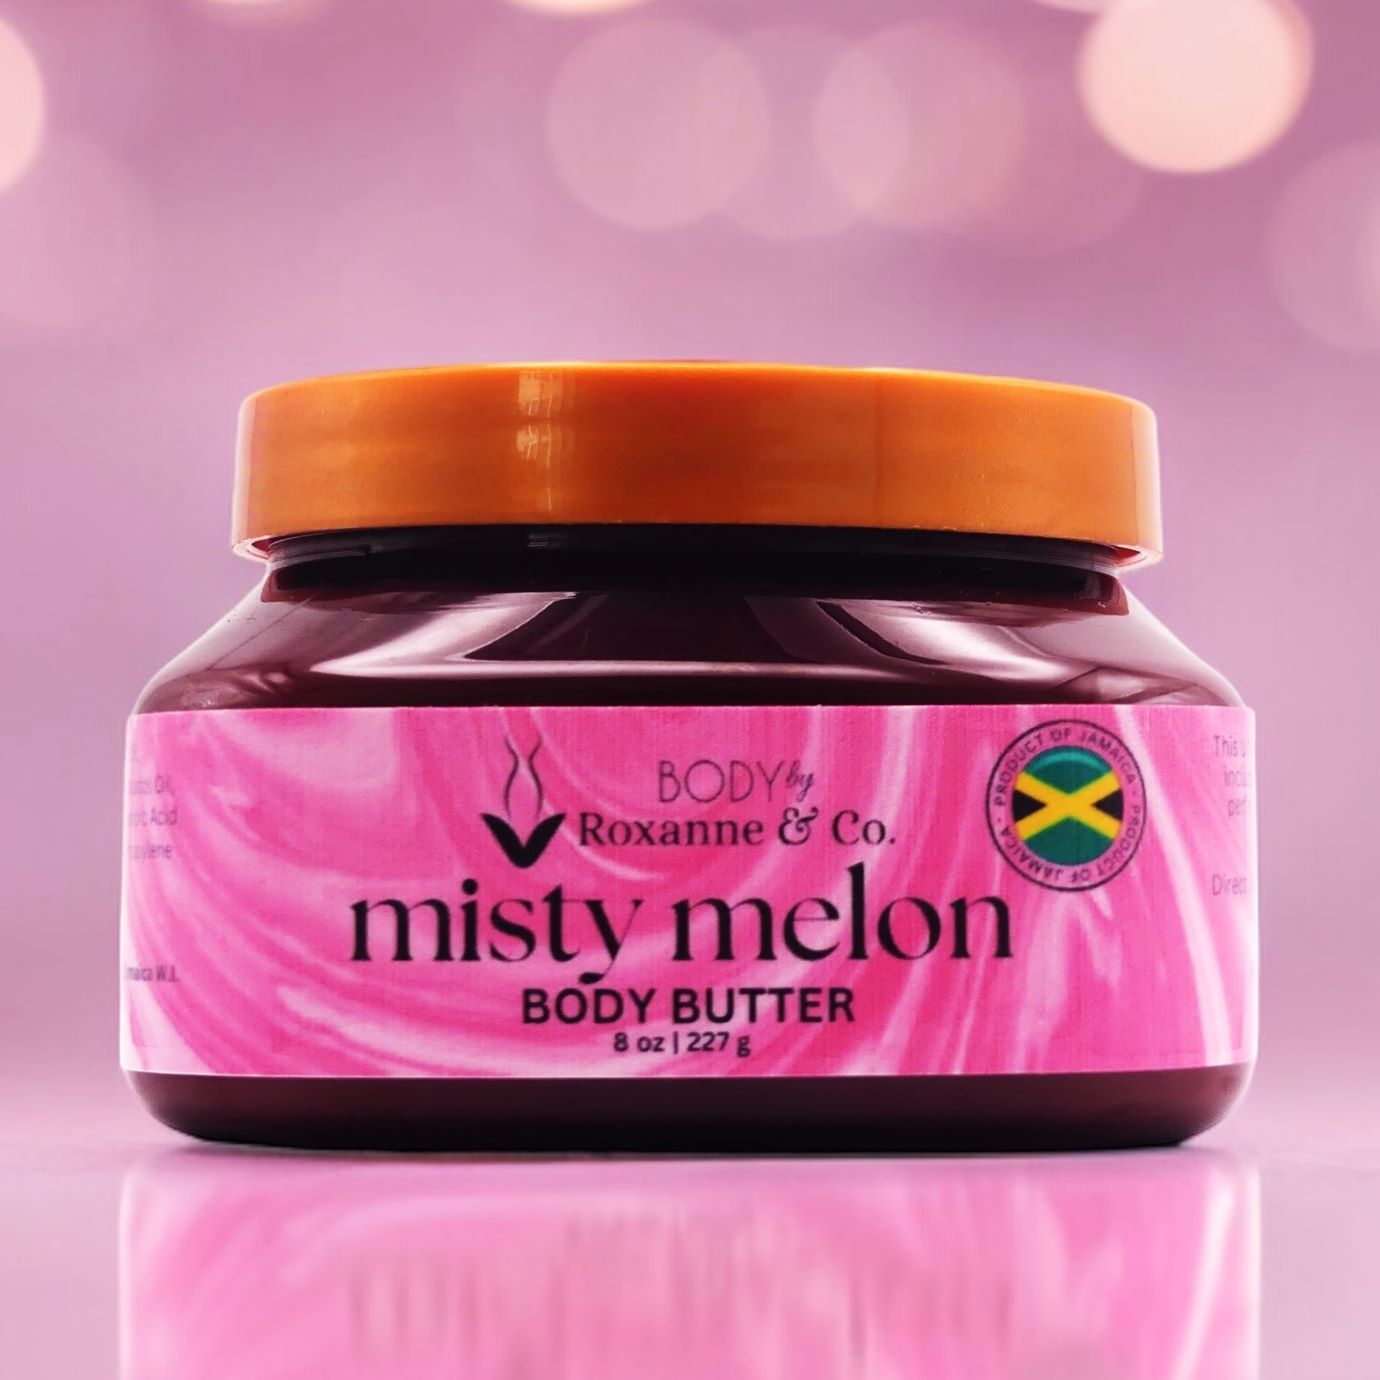 Misty melon Body Butter 8 oz